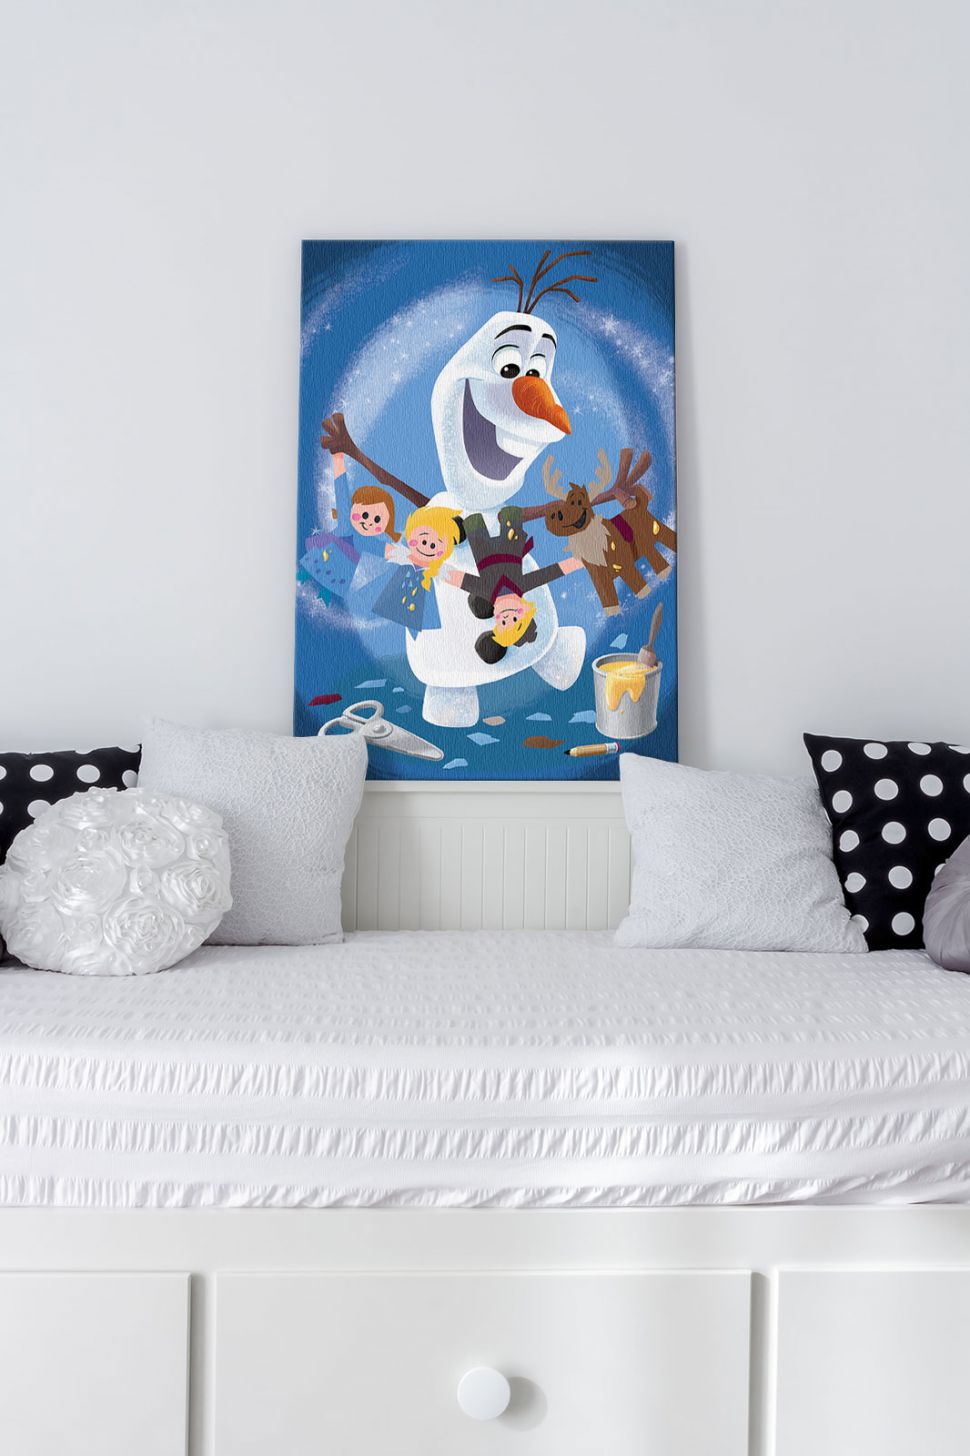 Canvas z Olafem z Frozen postawiony na białej ramie łóżka